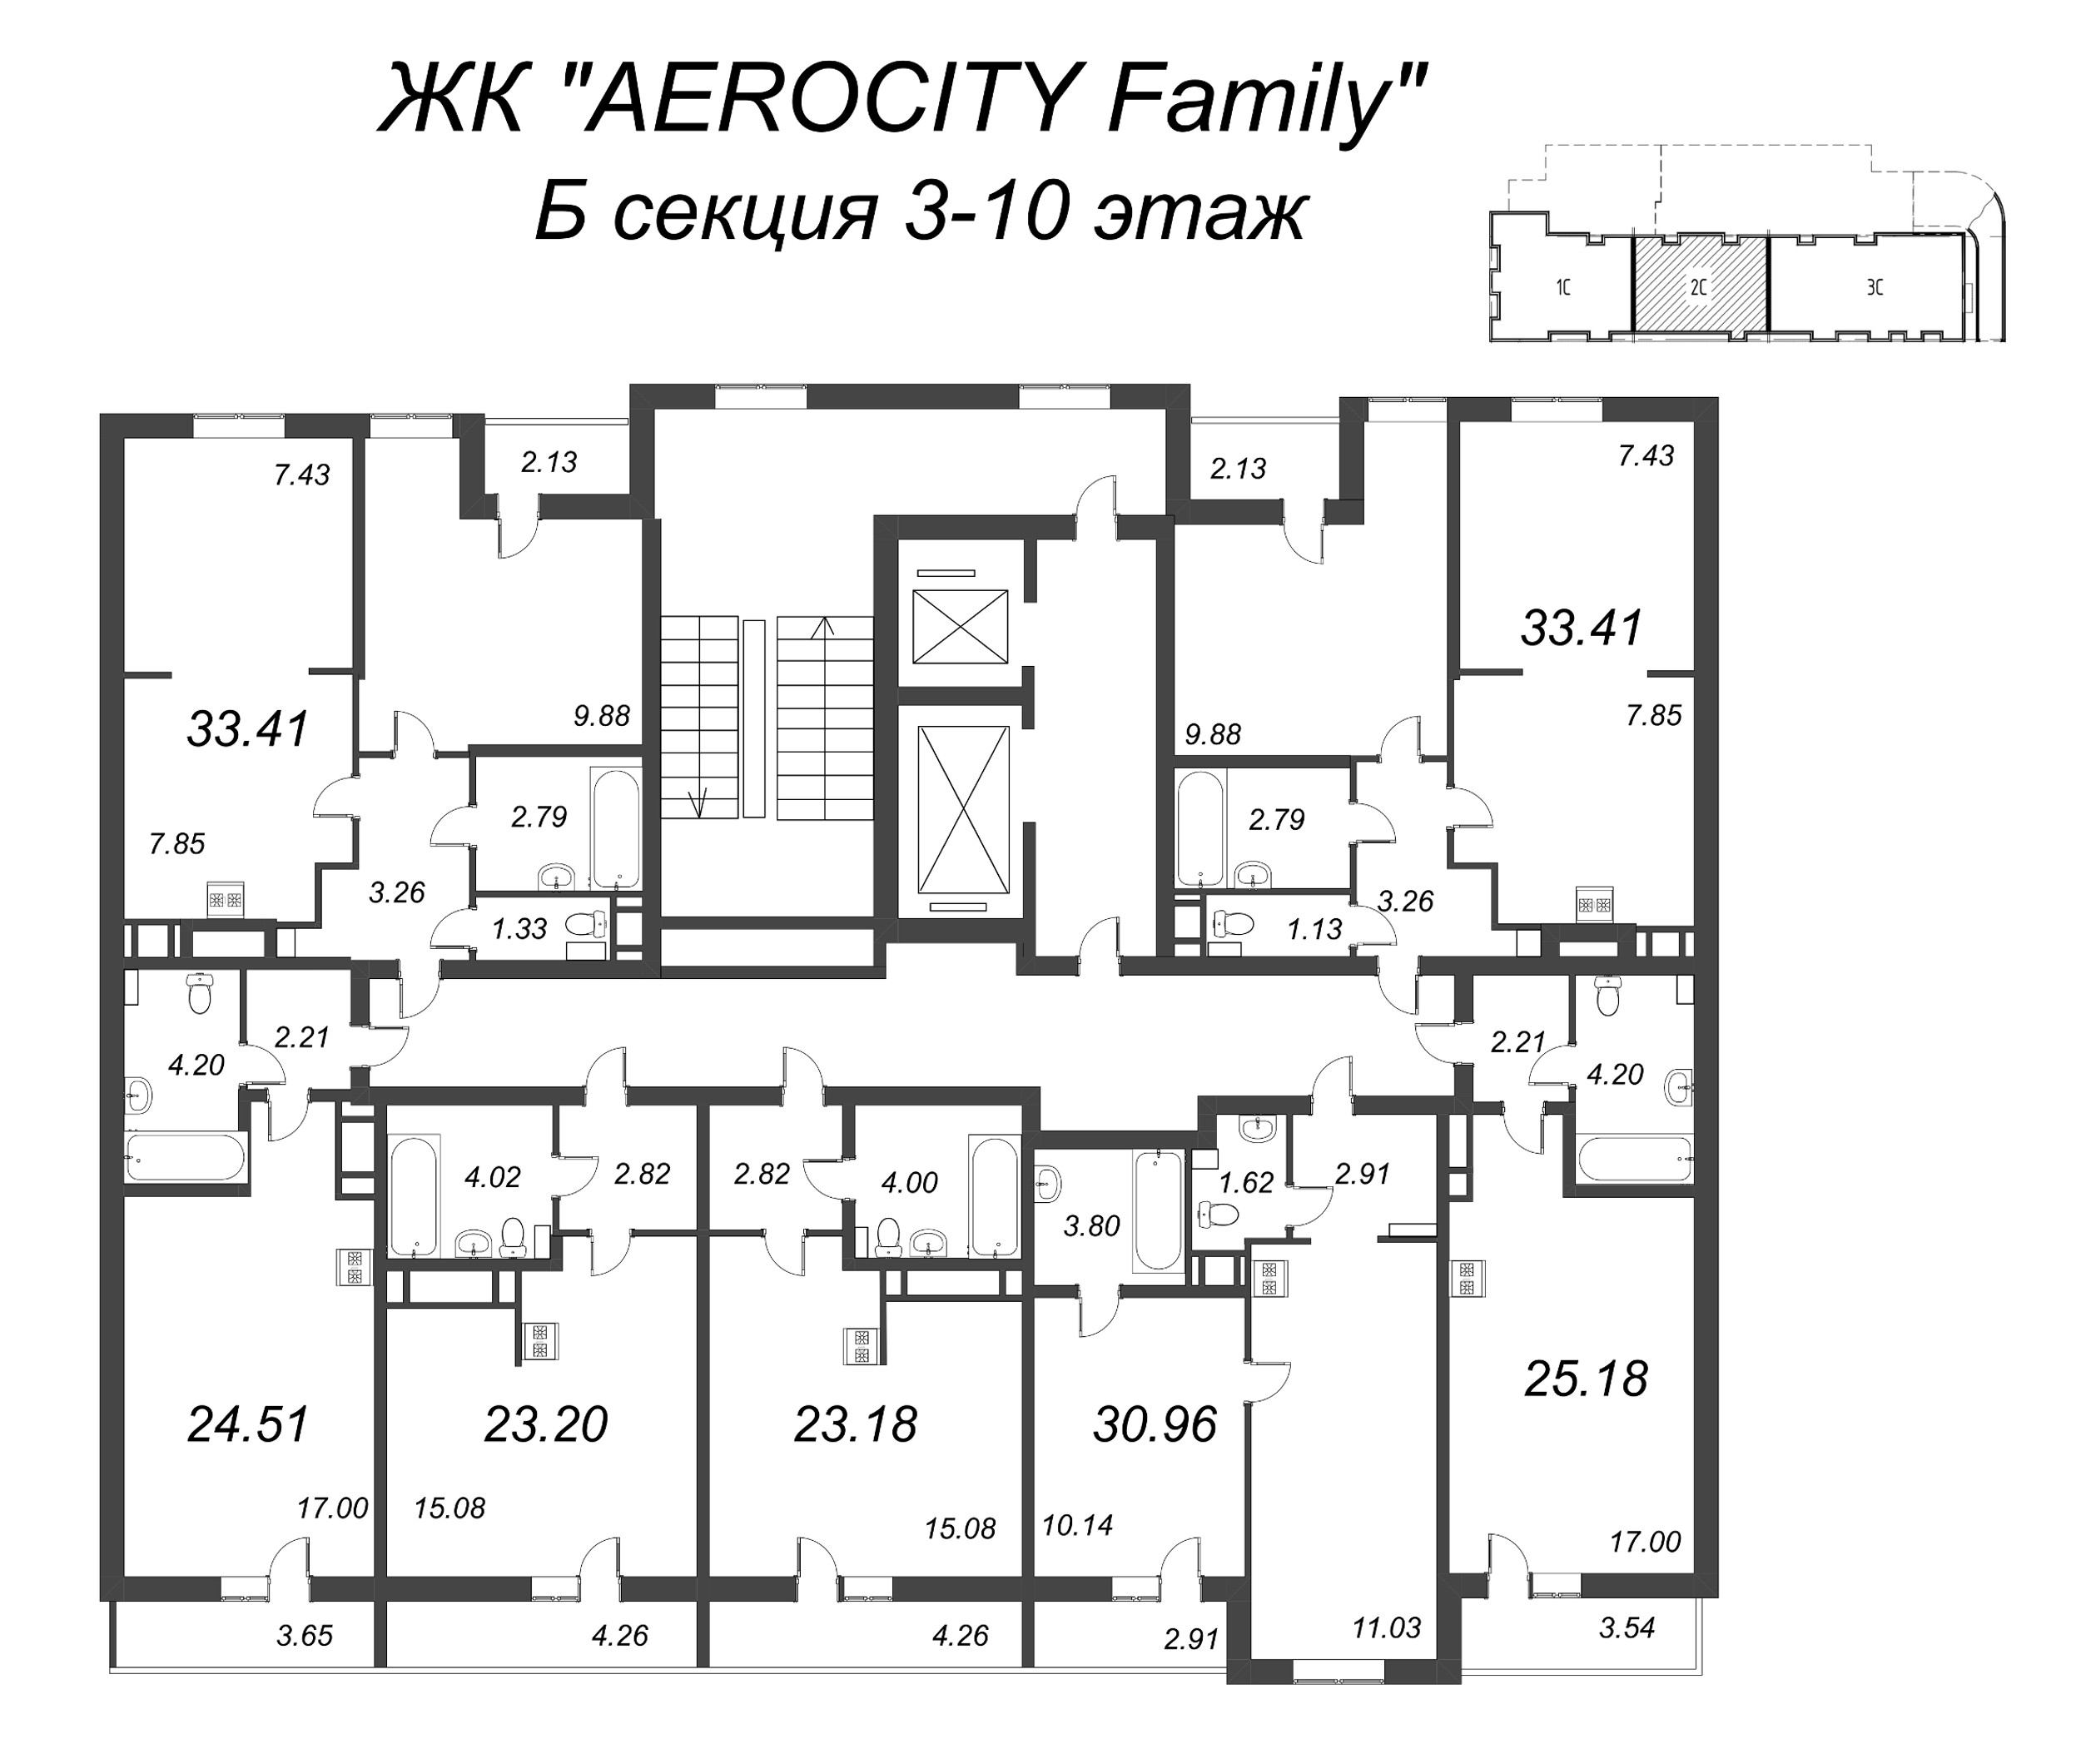 1-комнатная квартира, 30.96 м² в ЖК "AEROCITY Family" - планировка этажа